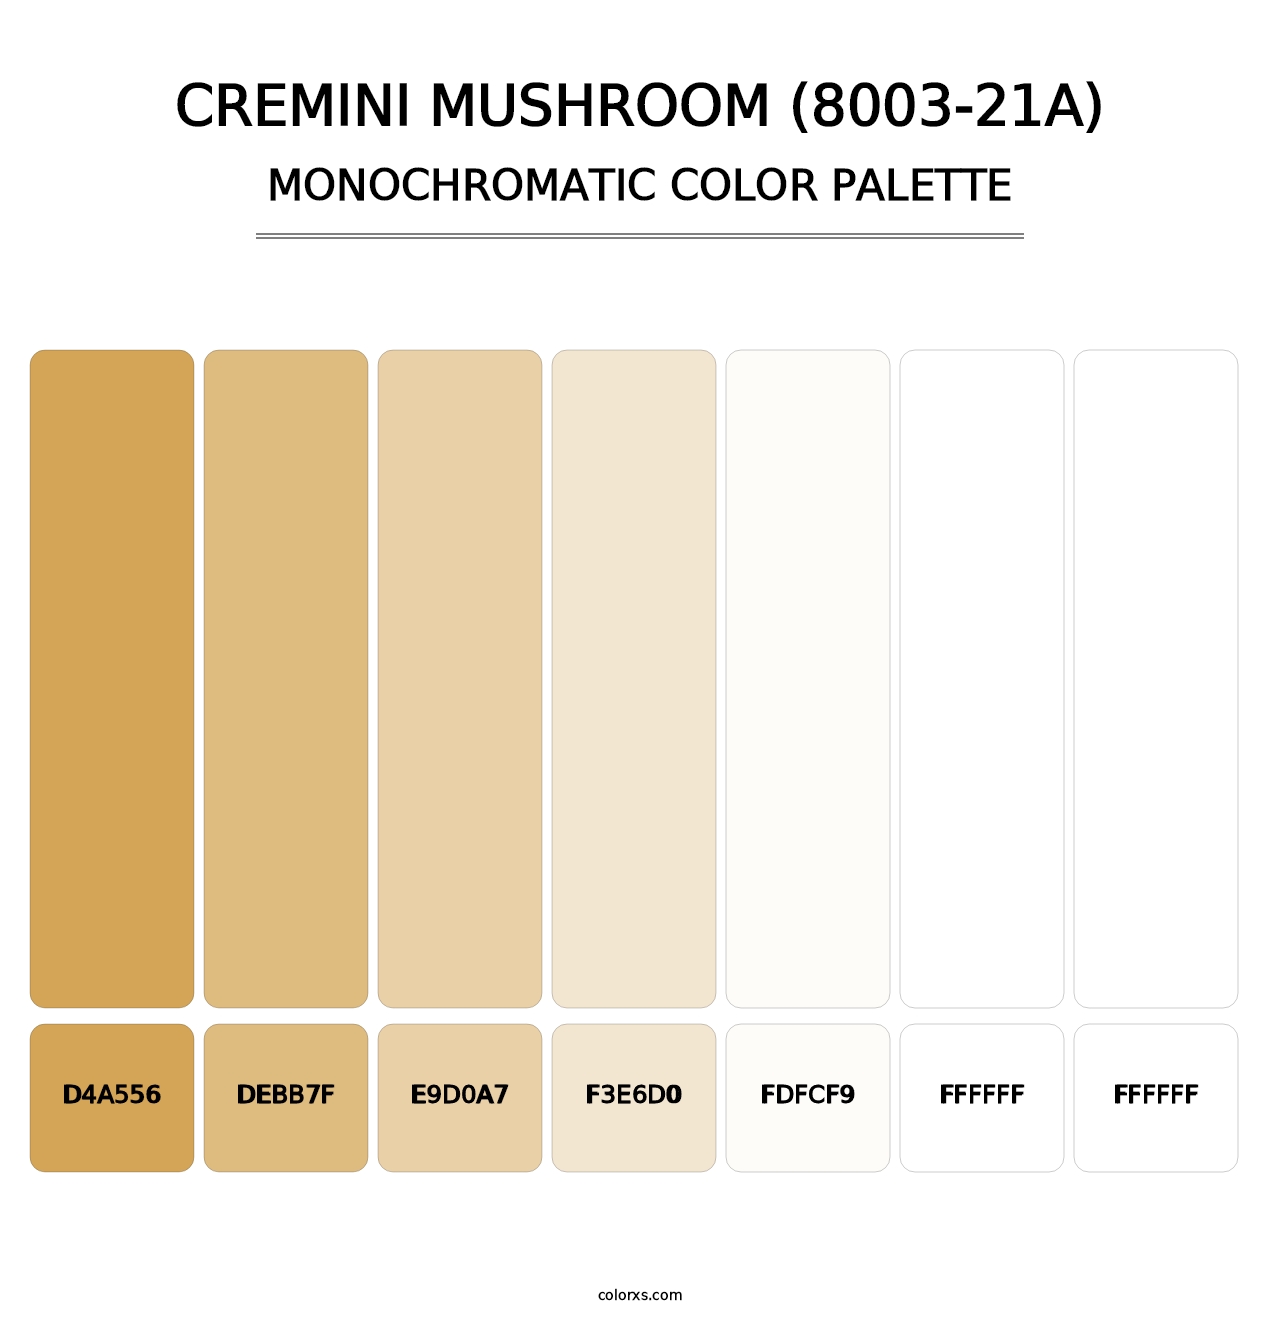 Cremini Mushroom (8003-21A) - Monochromatic Color Palette